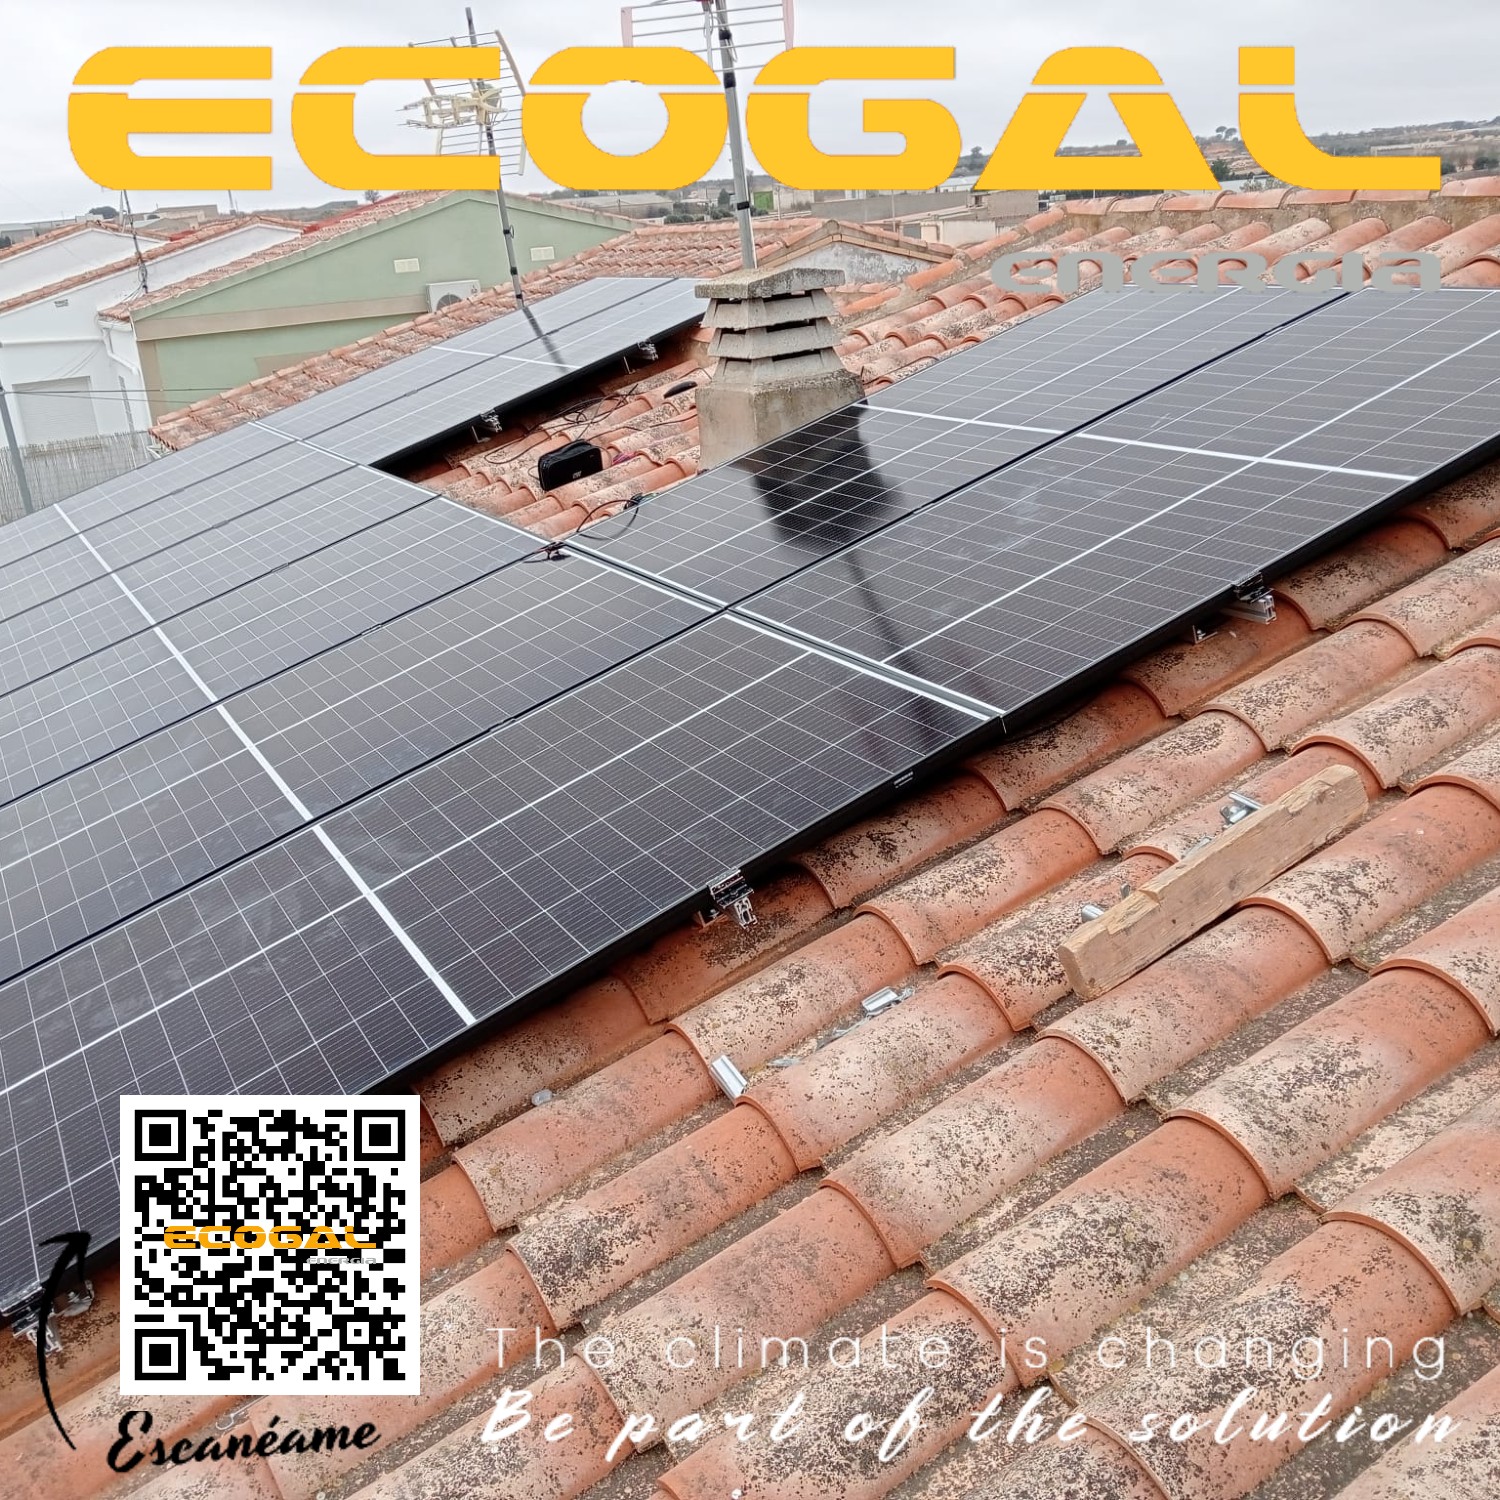 Instalación de paneles solares en una vivienda de Ledaña(Cuenca) de 5 kWp.